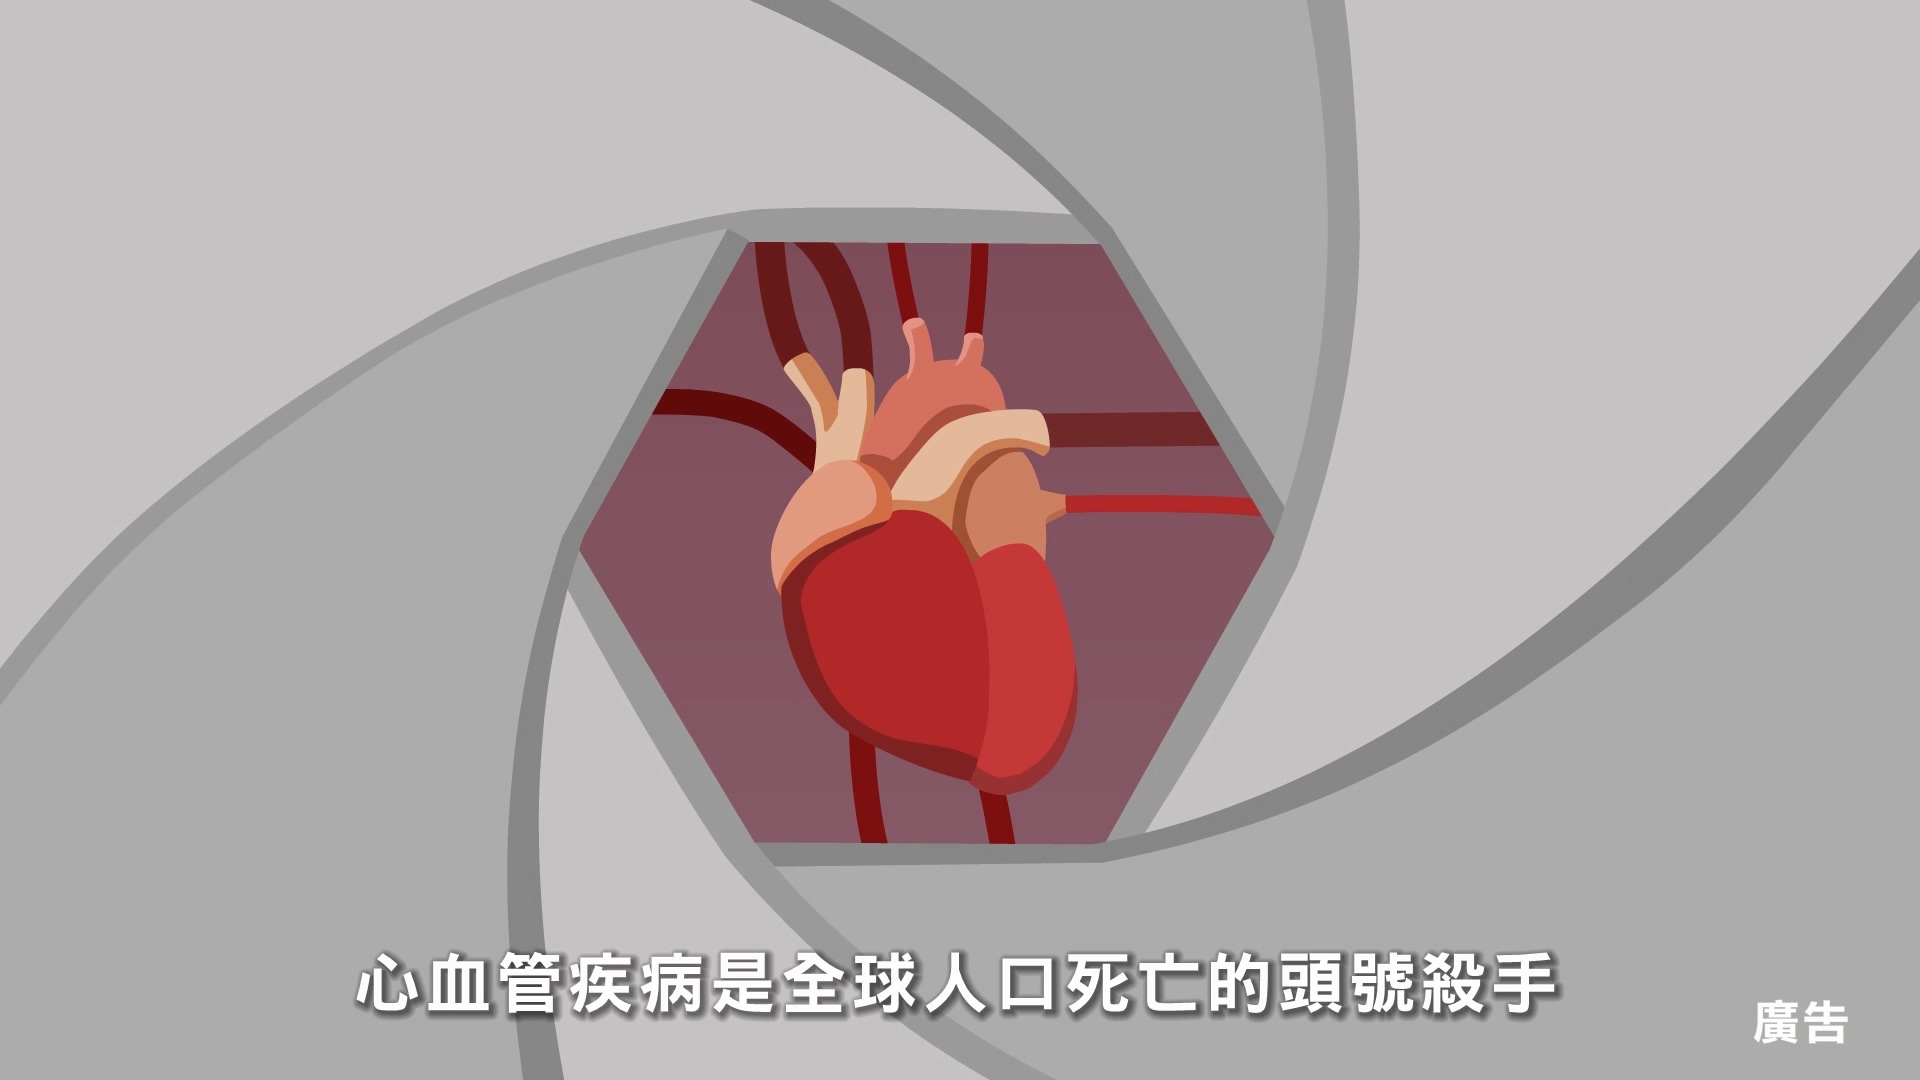 預防心血管疾病-危險因子篇(客語)文章照片